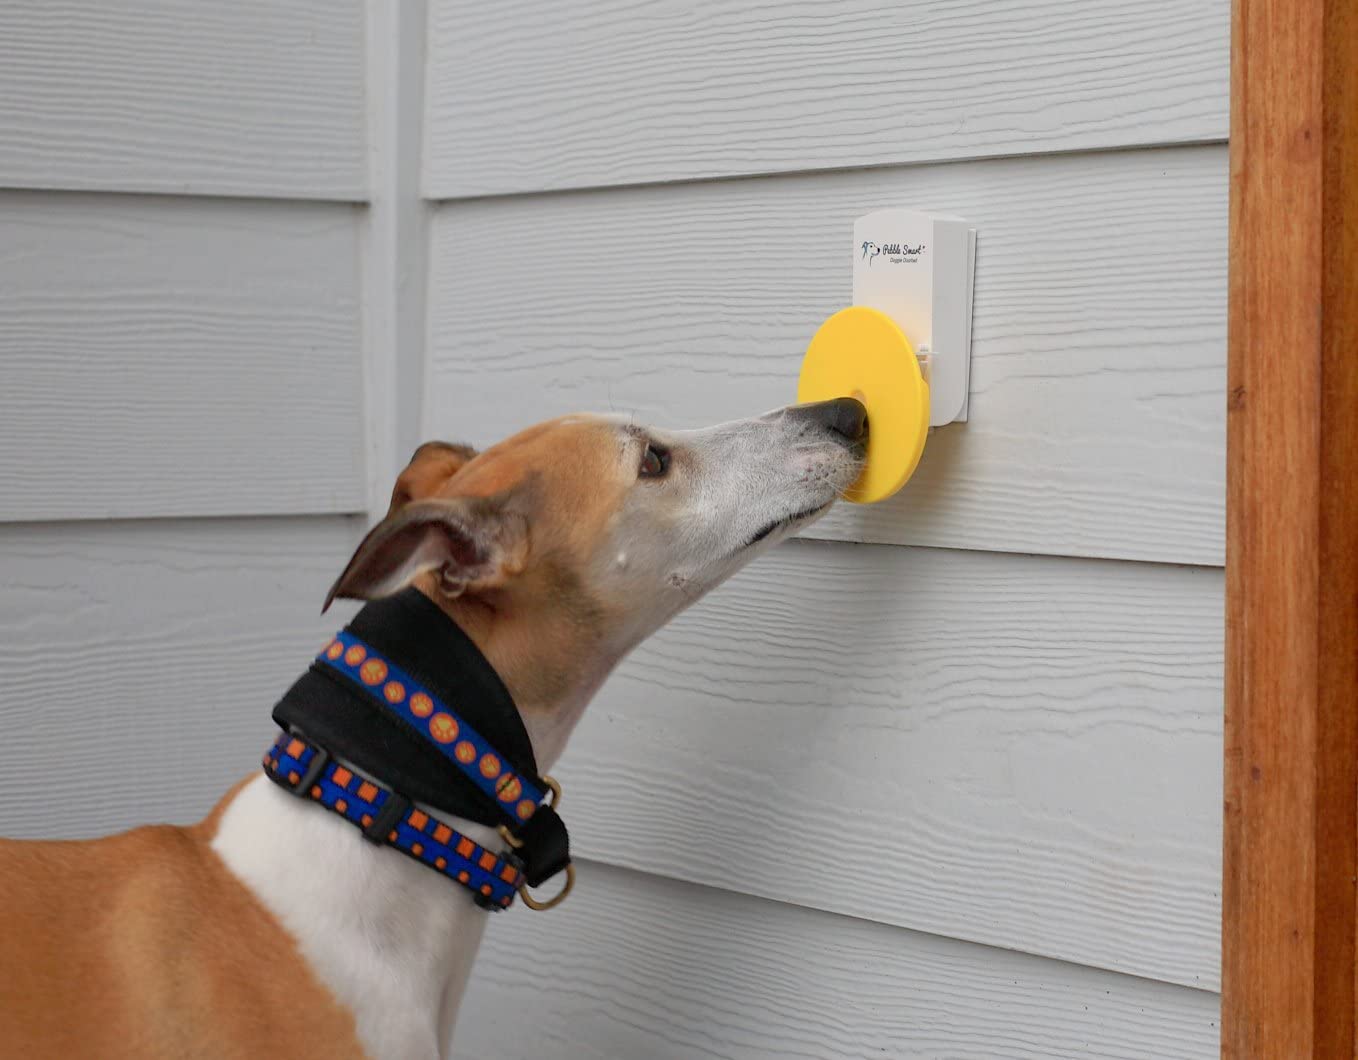 Pebble Smart Doggie Doorbell